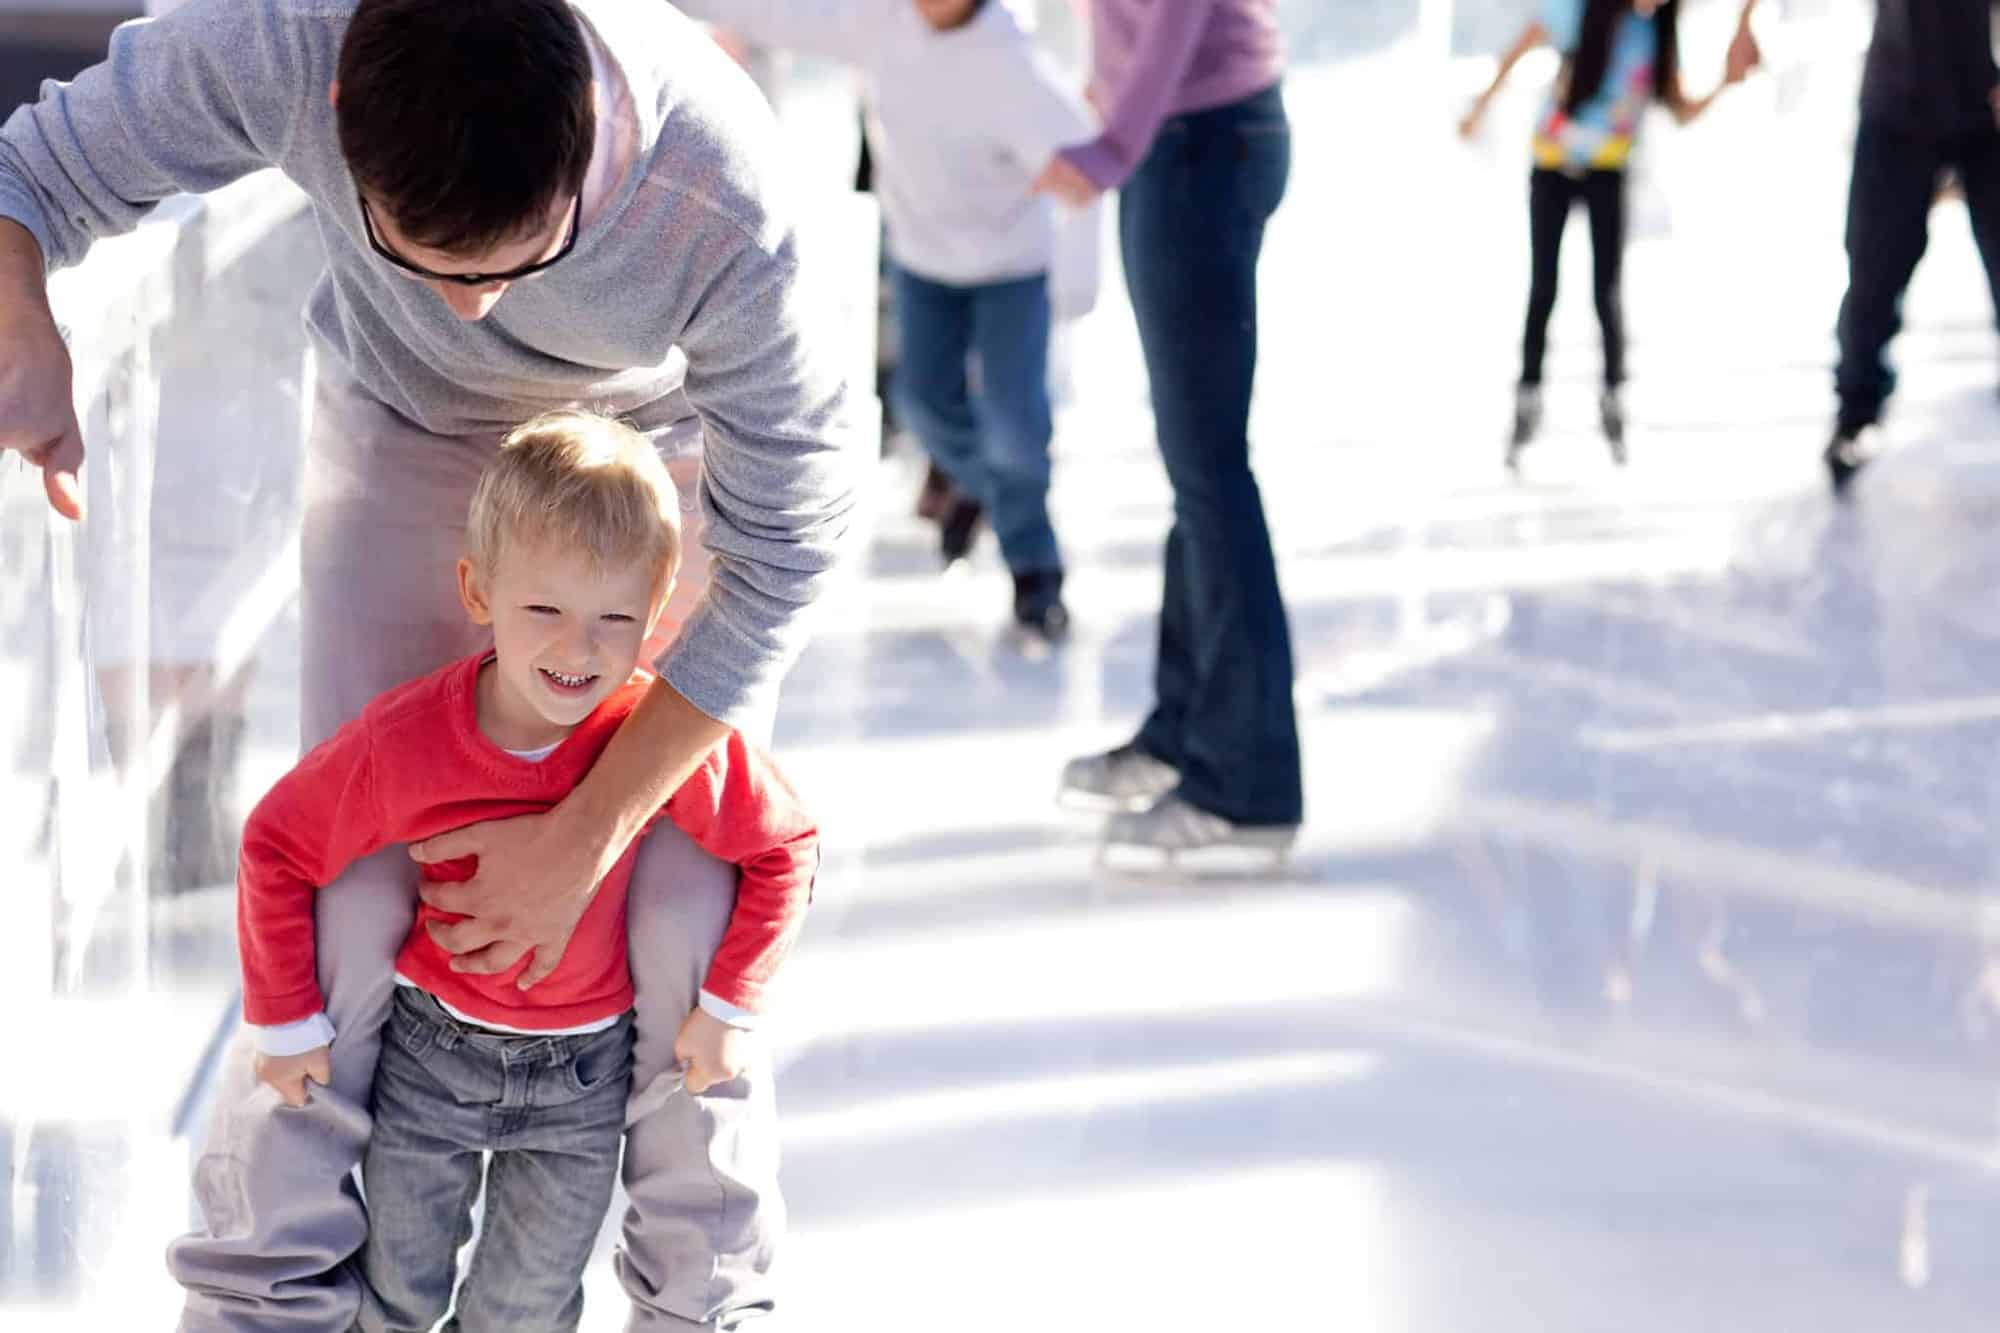 Child ice skating at Christmas